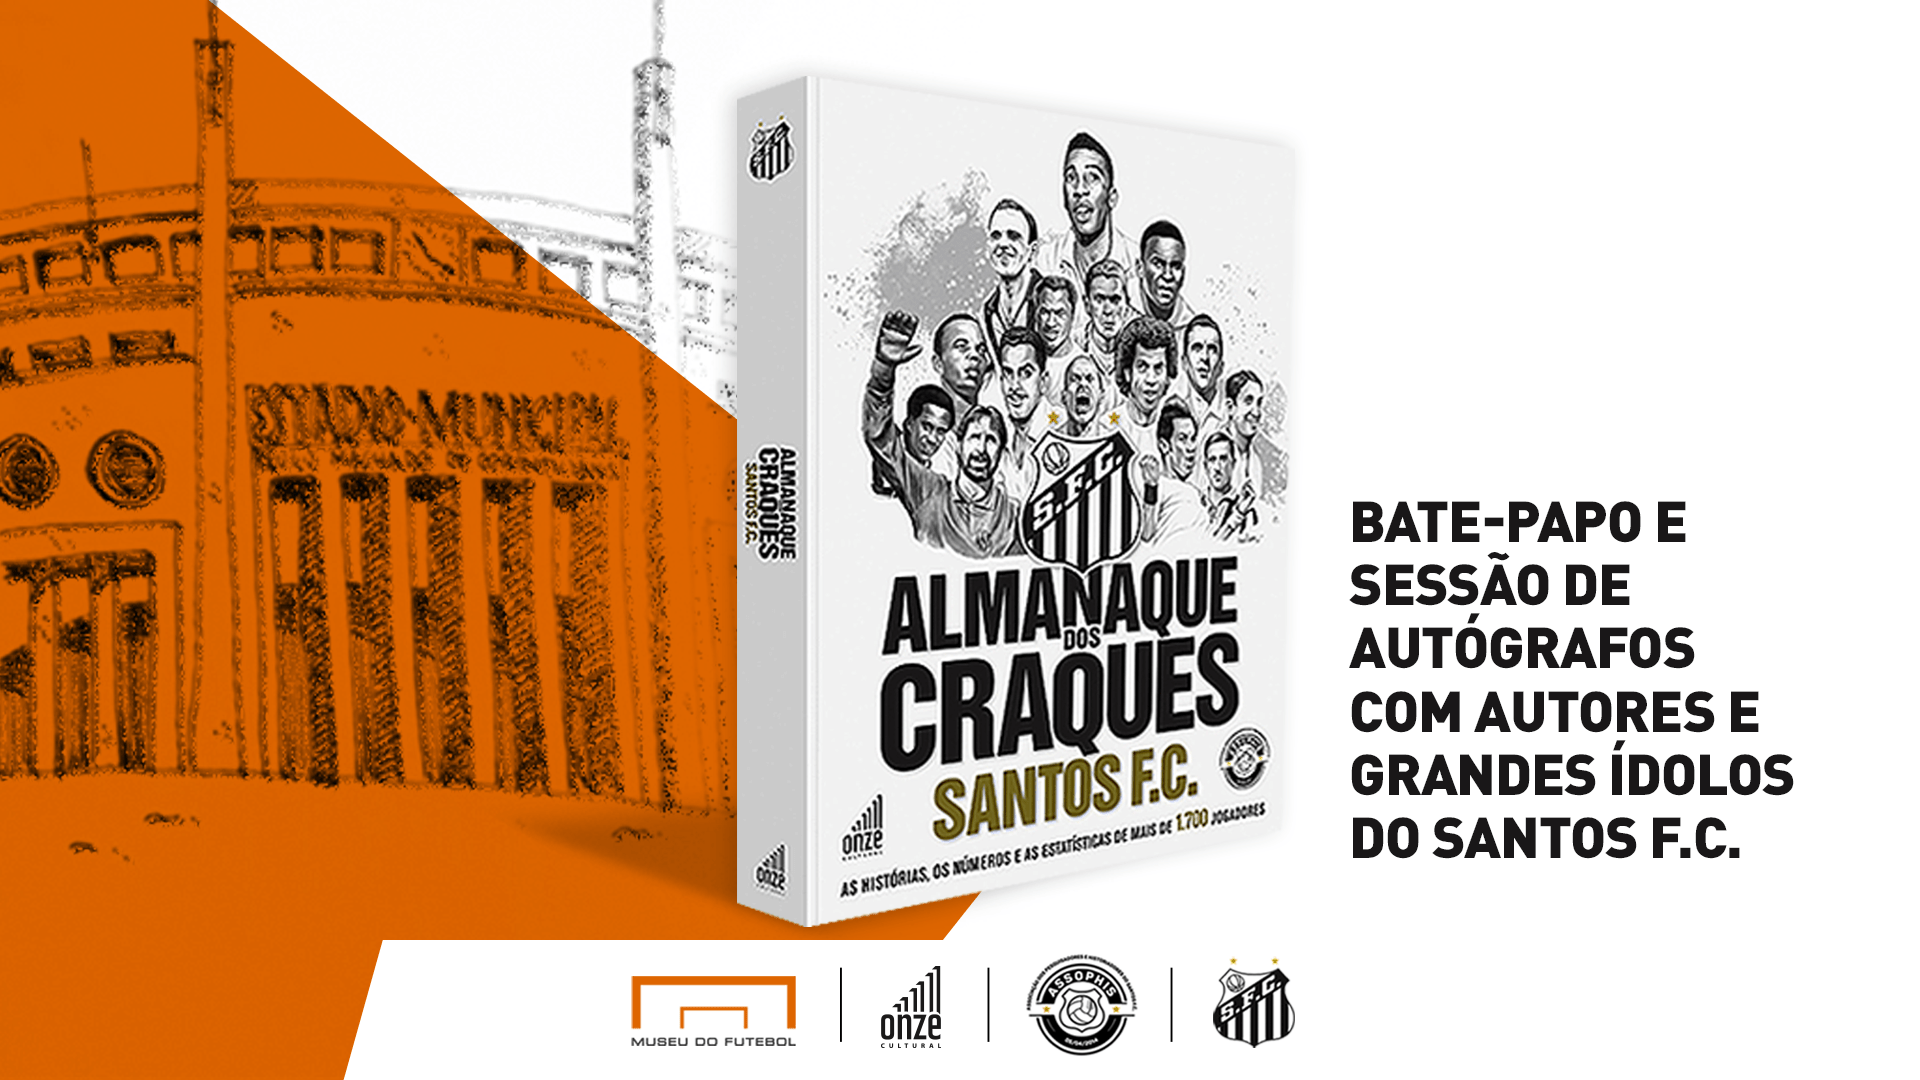 Ilustração com desenho do estádio do Pacaembu e a foto do livro Almanaque dos Craques Santos FC, que é branca e tem desenhos de jogadores e o escudo do clube.